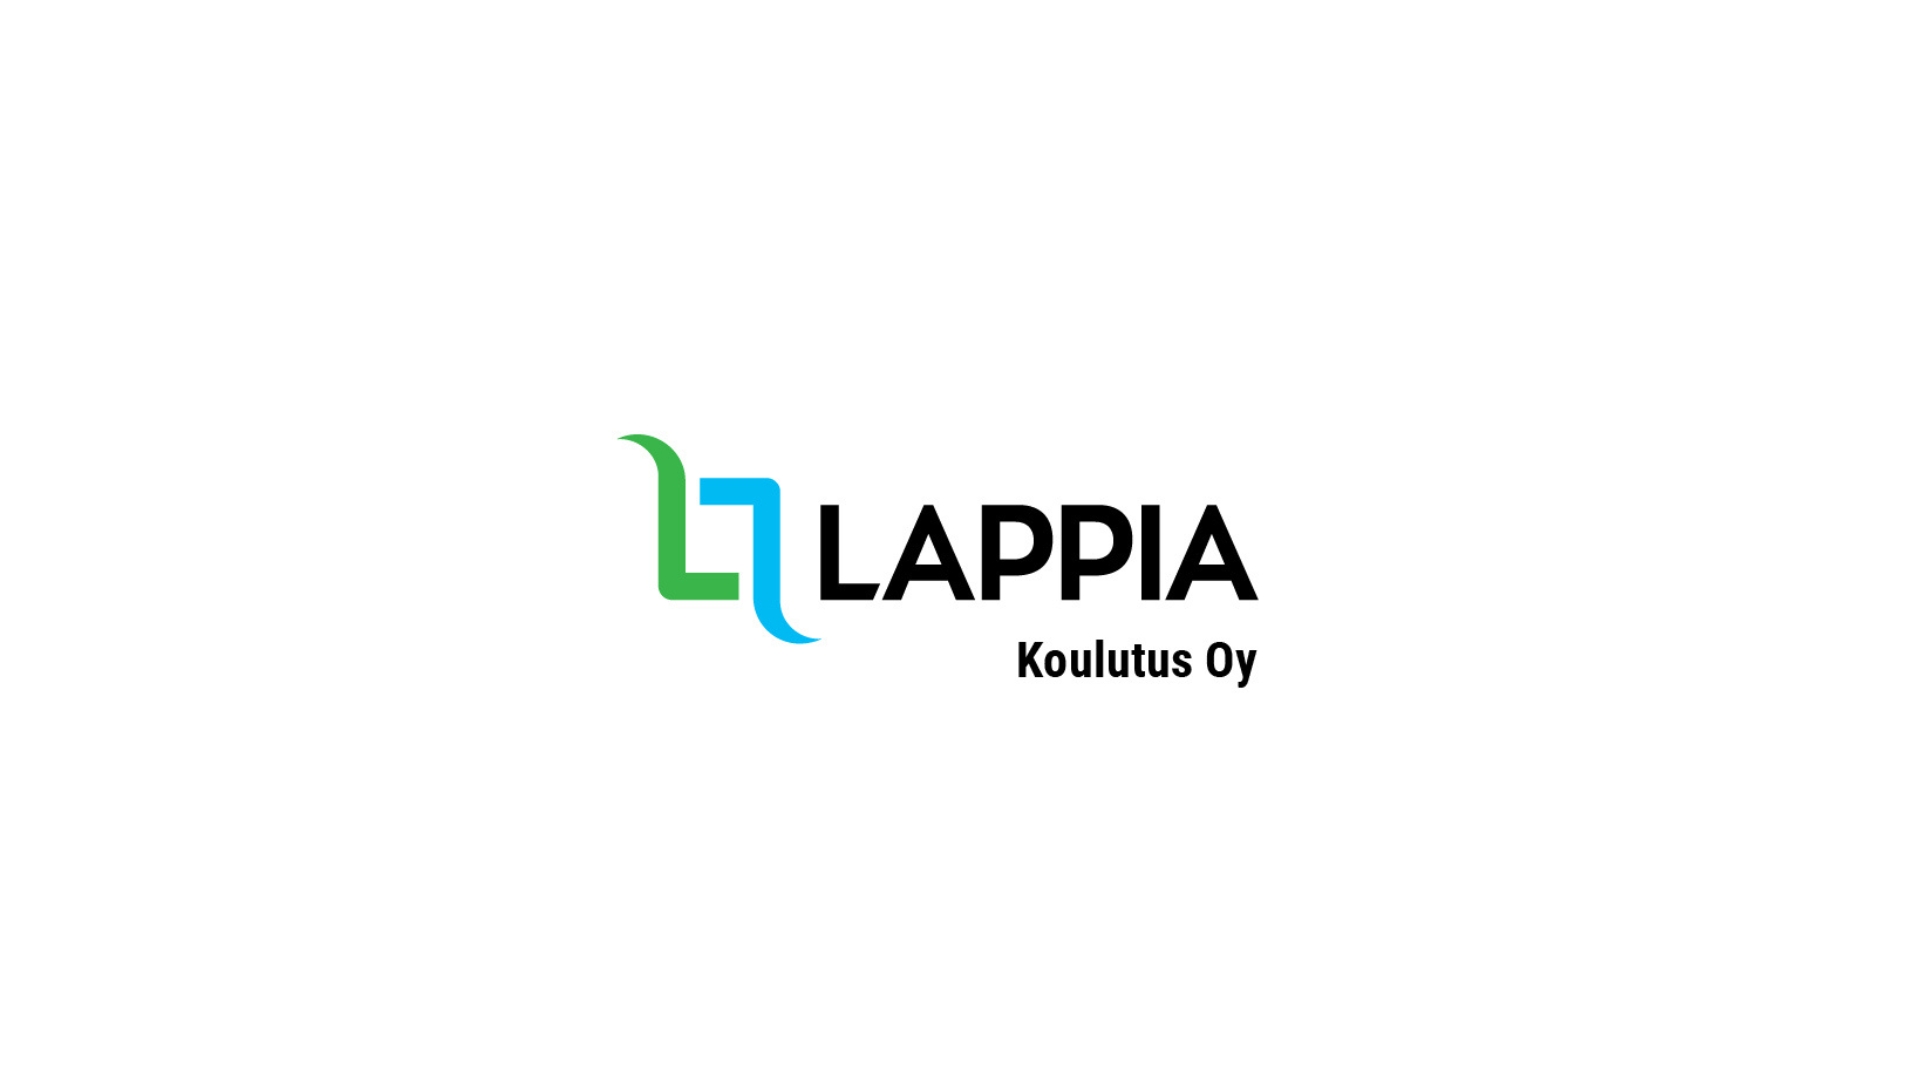 Lappia-Koulutus Oy:n logo